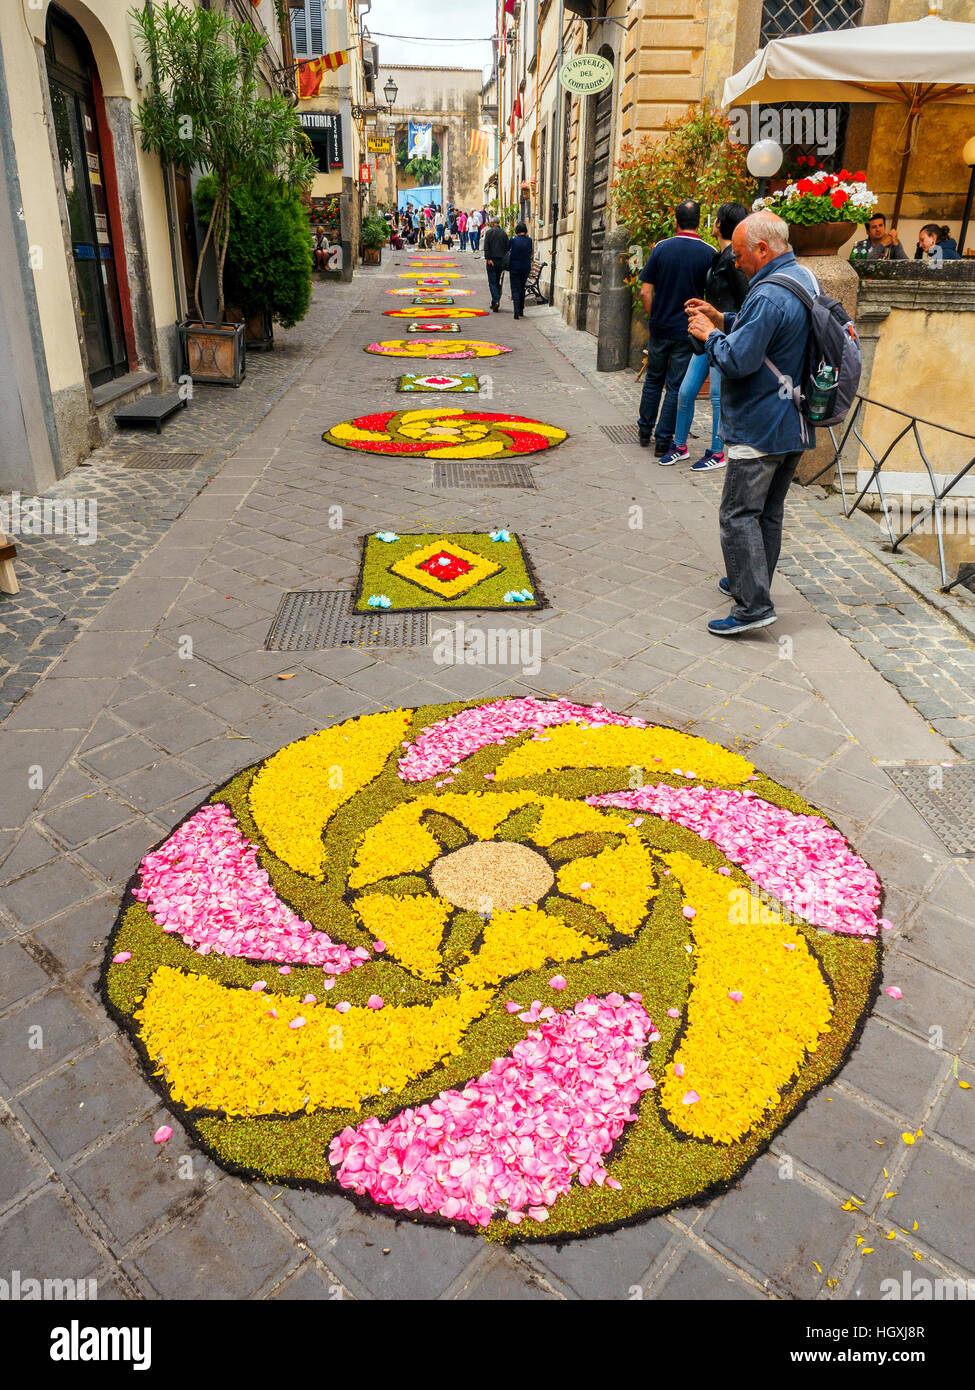 Une rue de la vieille ville de Bolsena lors du traditionnel tapis floral qui est fait chaque année pour le Corpus Christi - Bolsena, Italie Banque D'Images